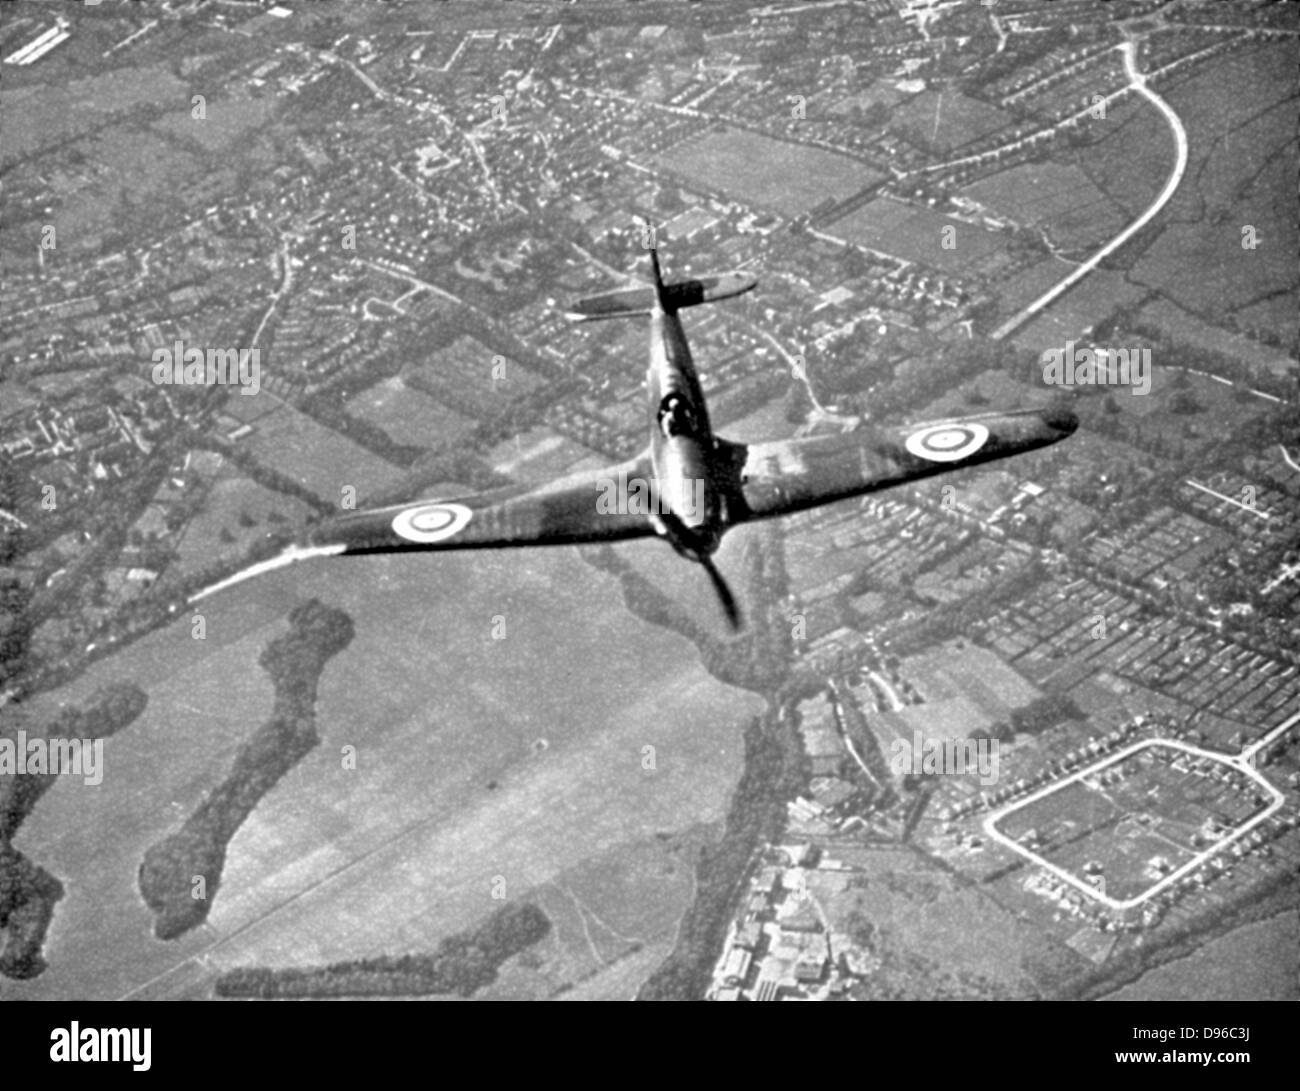 Bataille d'Angleterre 10 juillet-31 octobre 1940 : Hawker Hurricane de chasse, comme première ligne de défense, sur sa façon d'engager les bombardiers allemands en traversant la côte sud de l'Angleterre. Première grande bataille remportée dans l'air. La Seconde Guerre mondiale. Banque D'Images